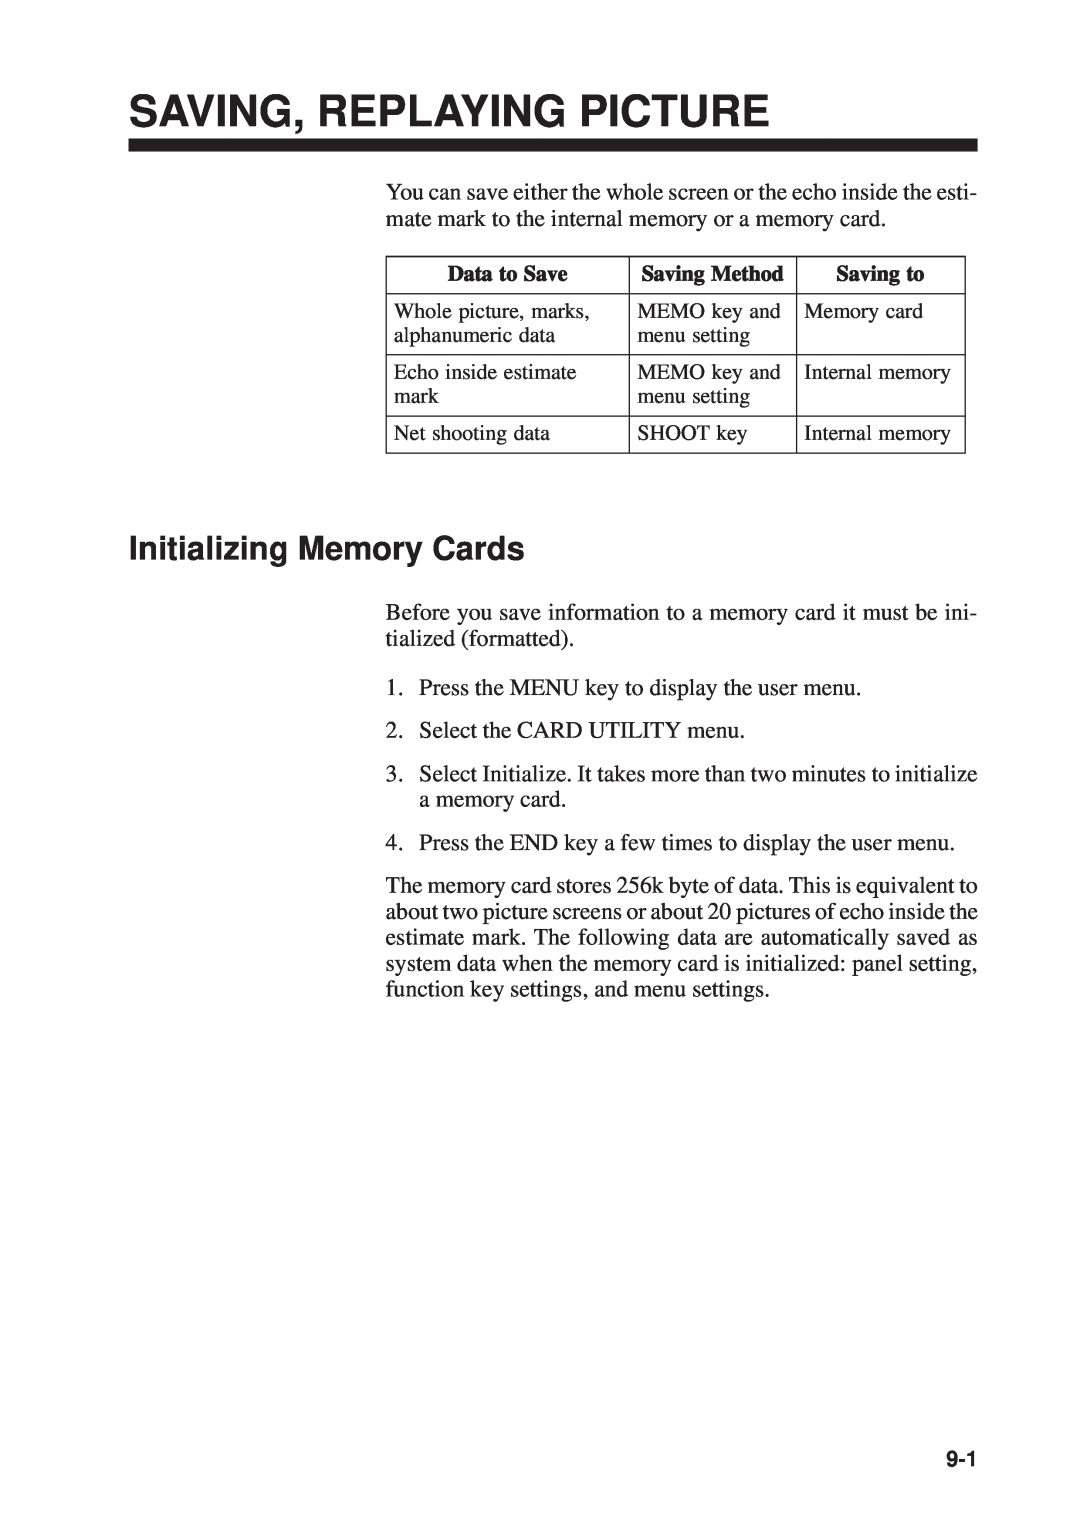 Furuno CSH-53 manual Saving, Replaying Picture, Initializing Memory Cards 